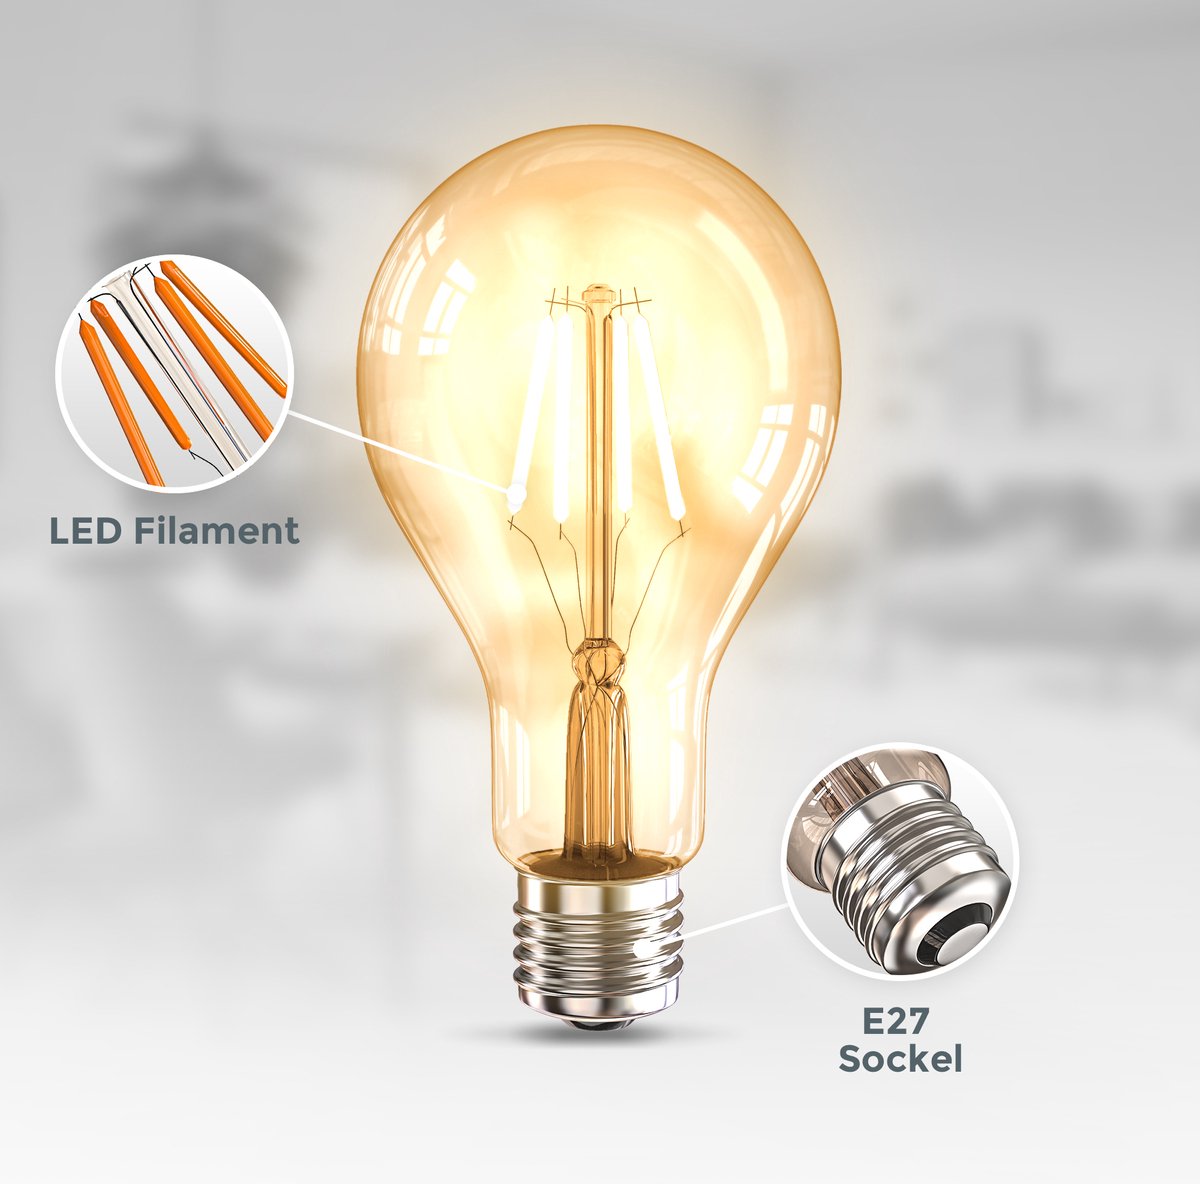 B.K.Licht - Ampoule connectée E14 - dimmable - ampoule intelligente - lampe  LED WiFi 